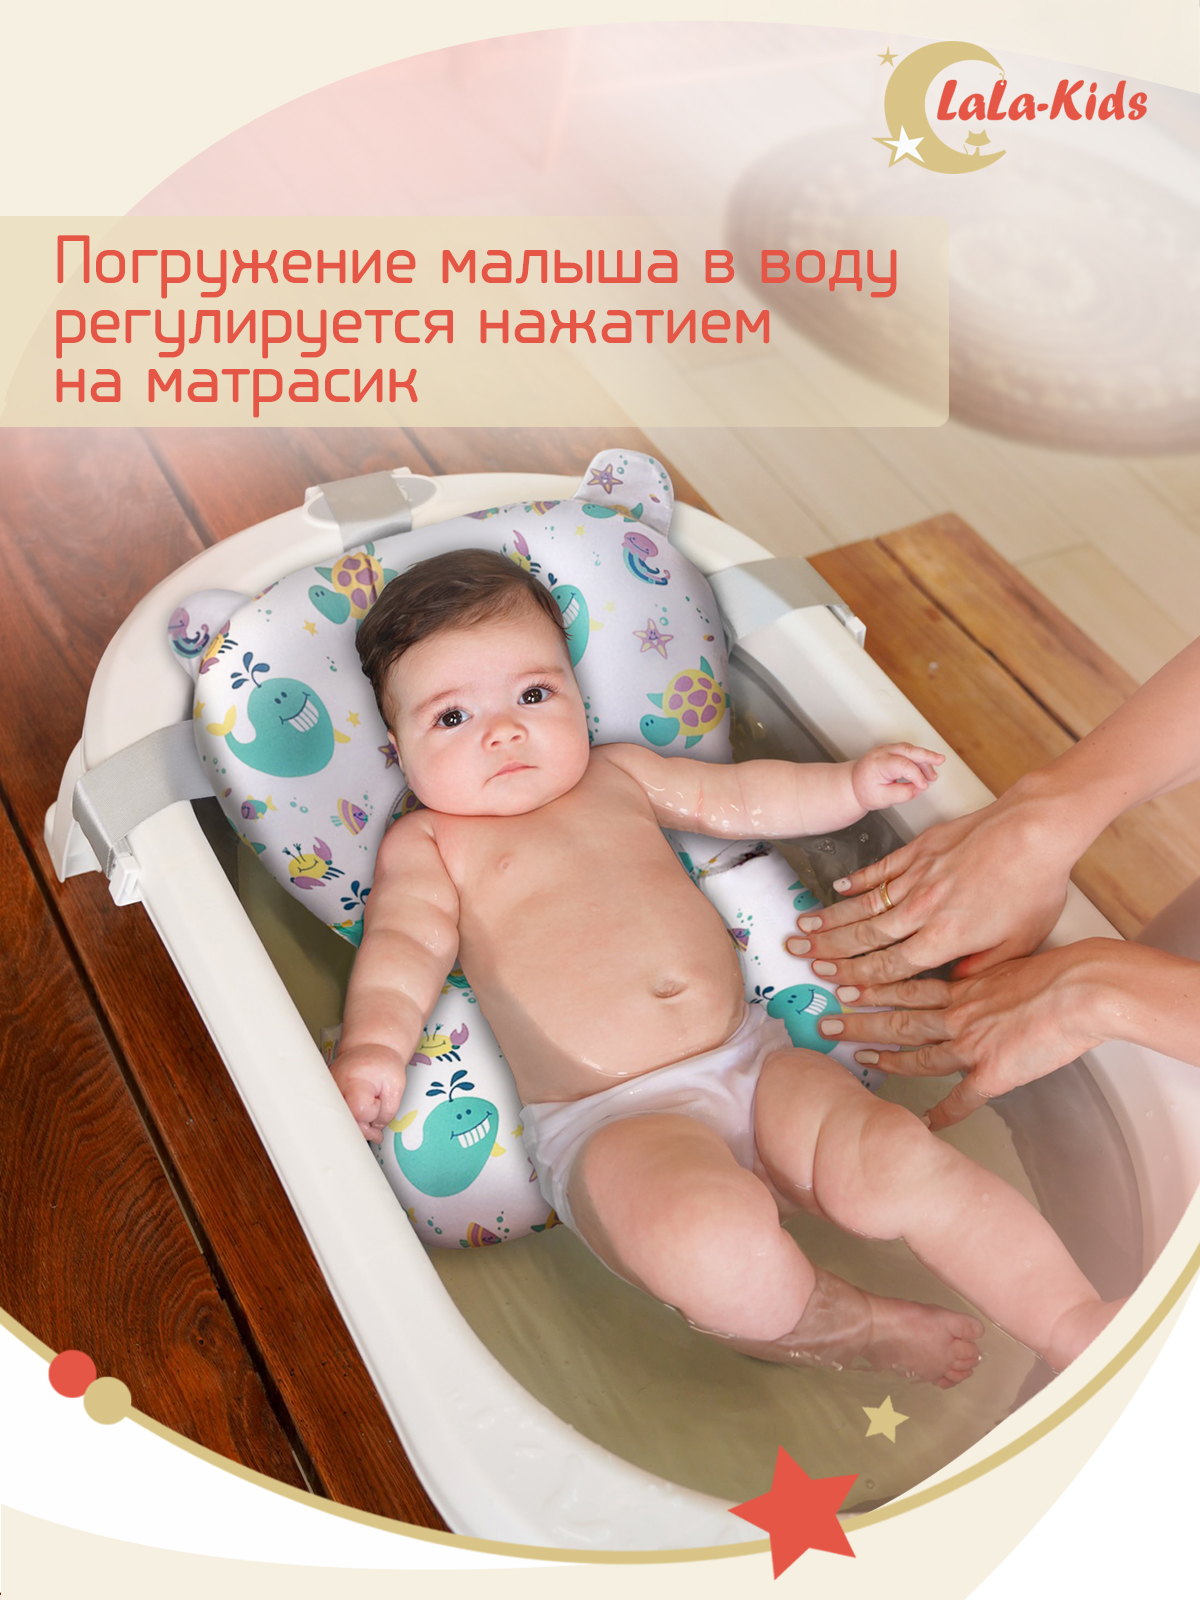 Матрасик для детской ванночки LaLa-Kids для купания новорожденных - фото 11